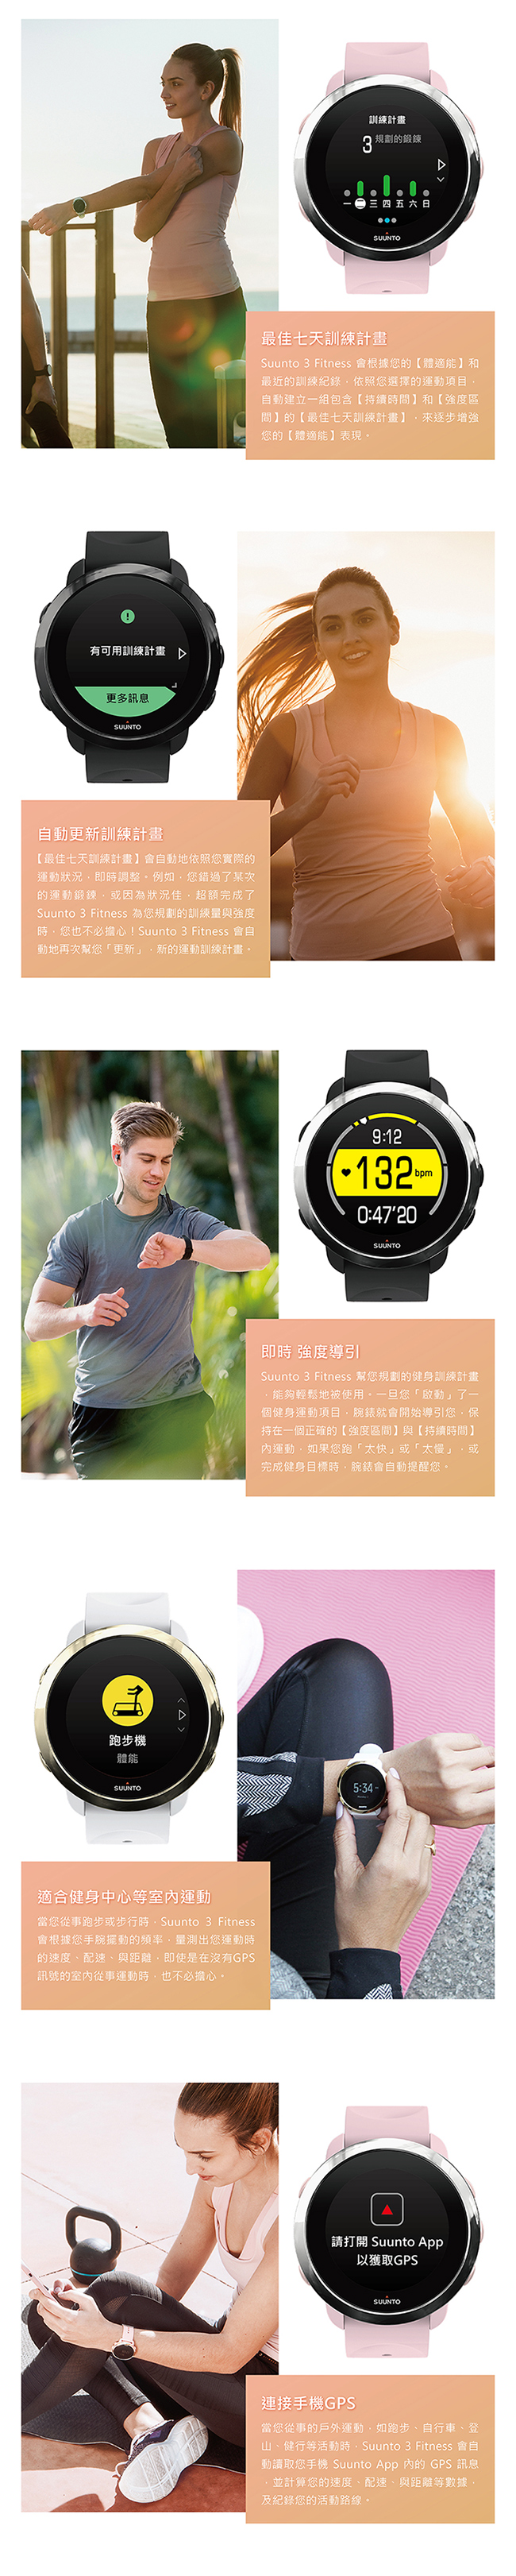 SUUNTO 3 Fitness 保持健康與活力生活的體適能運動腕錶 (經典黑)